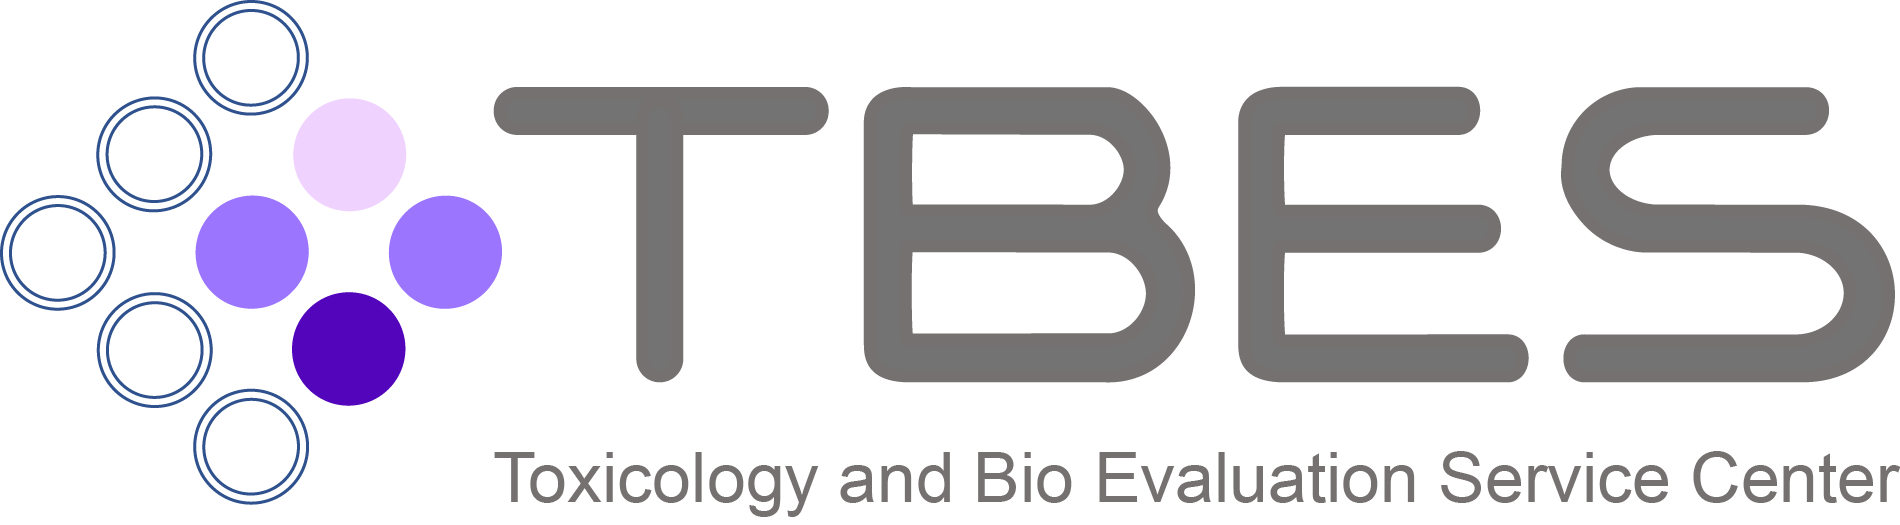 ตราโลโก้ ศูนย์ทดสอบทางพิษวิทยาและชีววิทยา (Toxicology and Bio Evaluation Service Center)